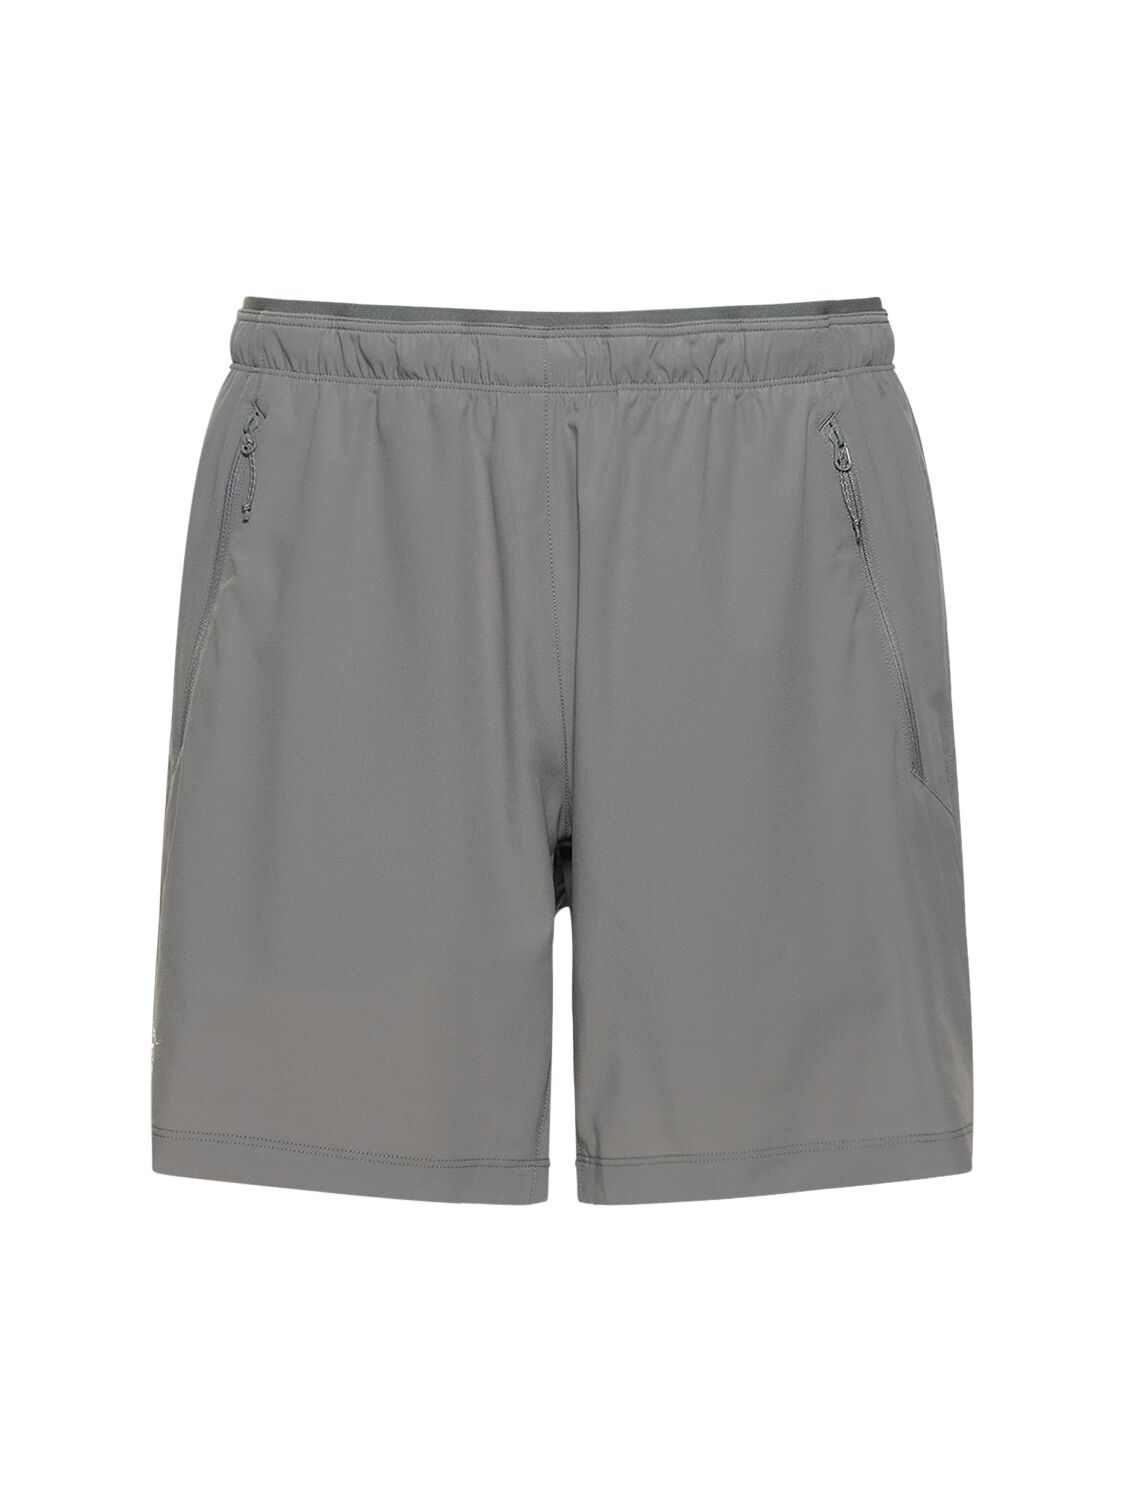 Incendo Shorts – MEN > CLOTHING > SHORTS